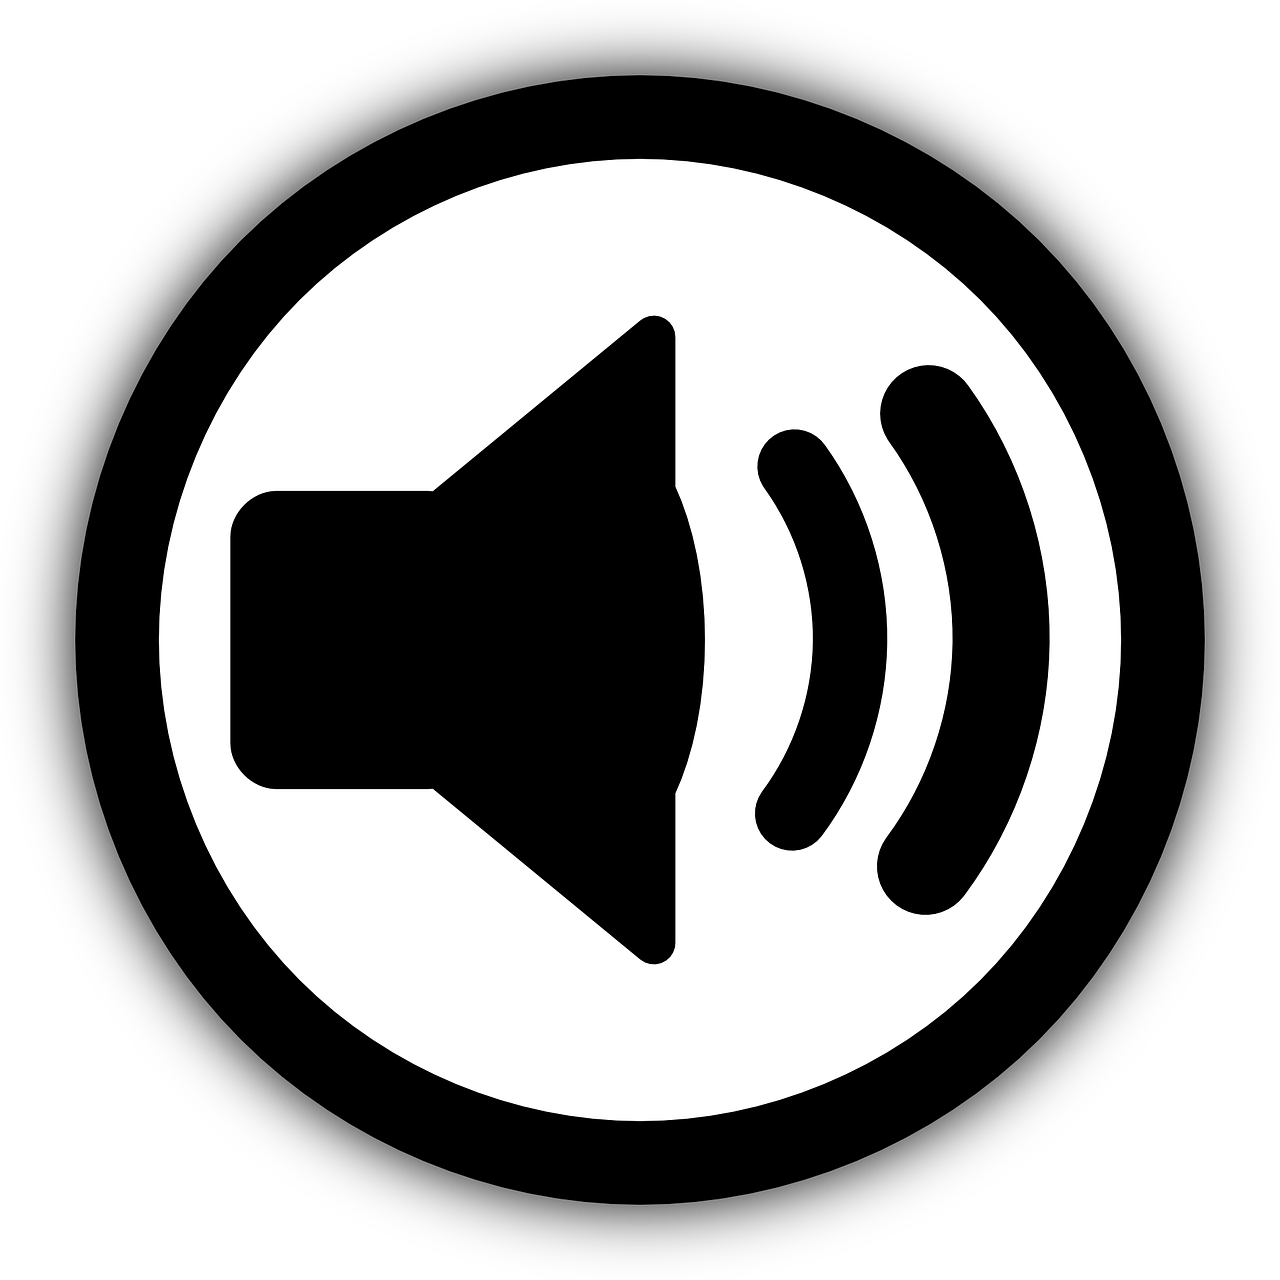 Speaker Volume Icon Blackand White